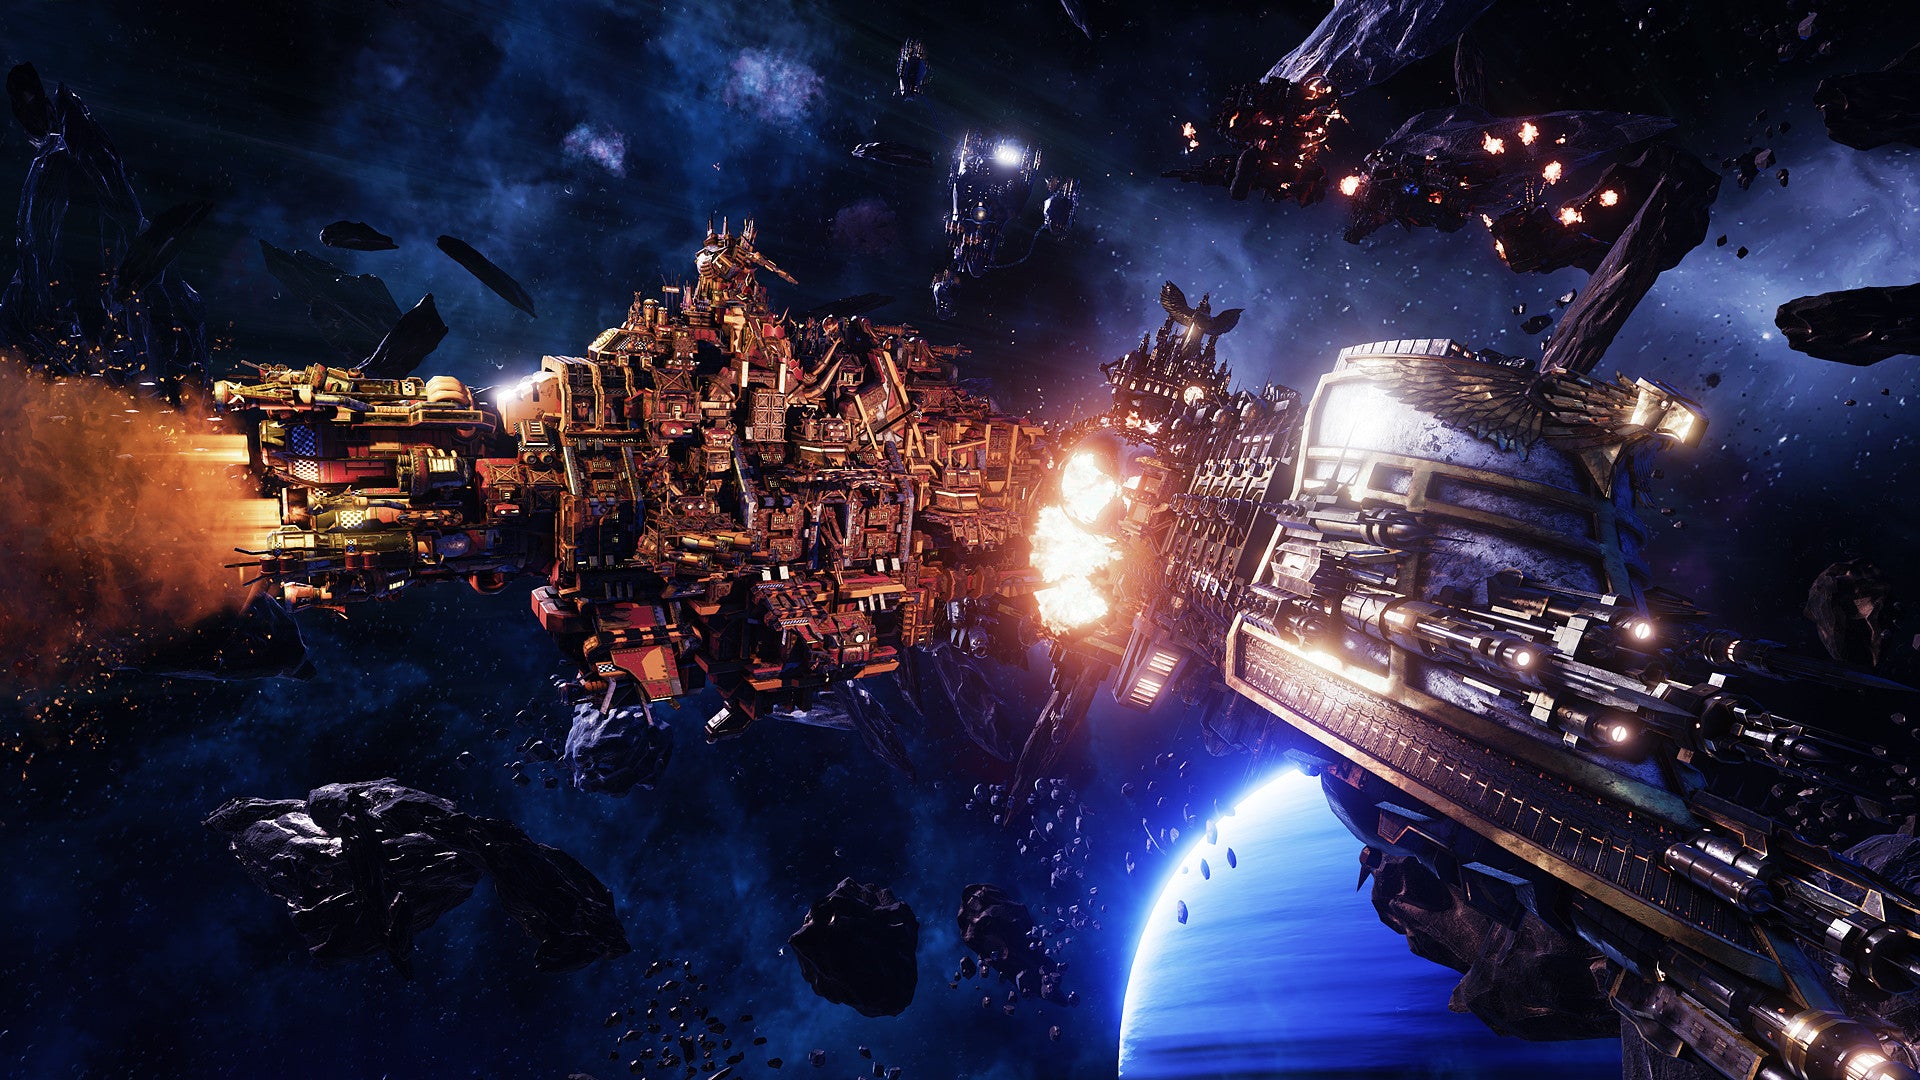 Battlefleet Gothic Armada Cd Key Buy Online - khaos imperium roblox